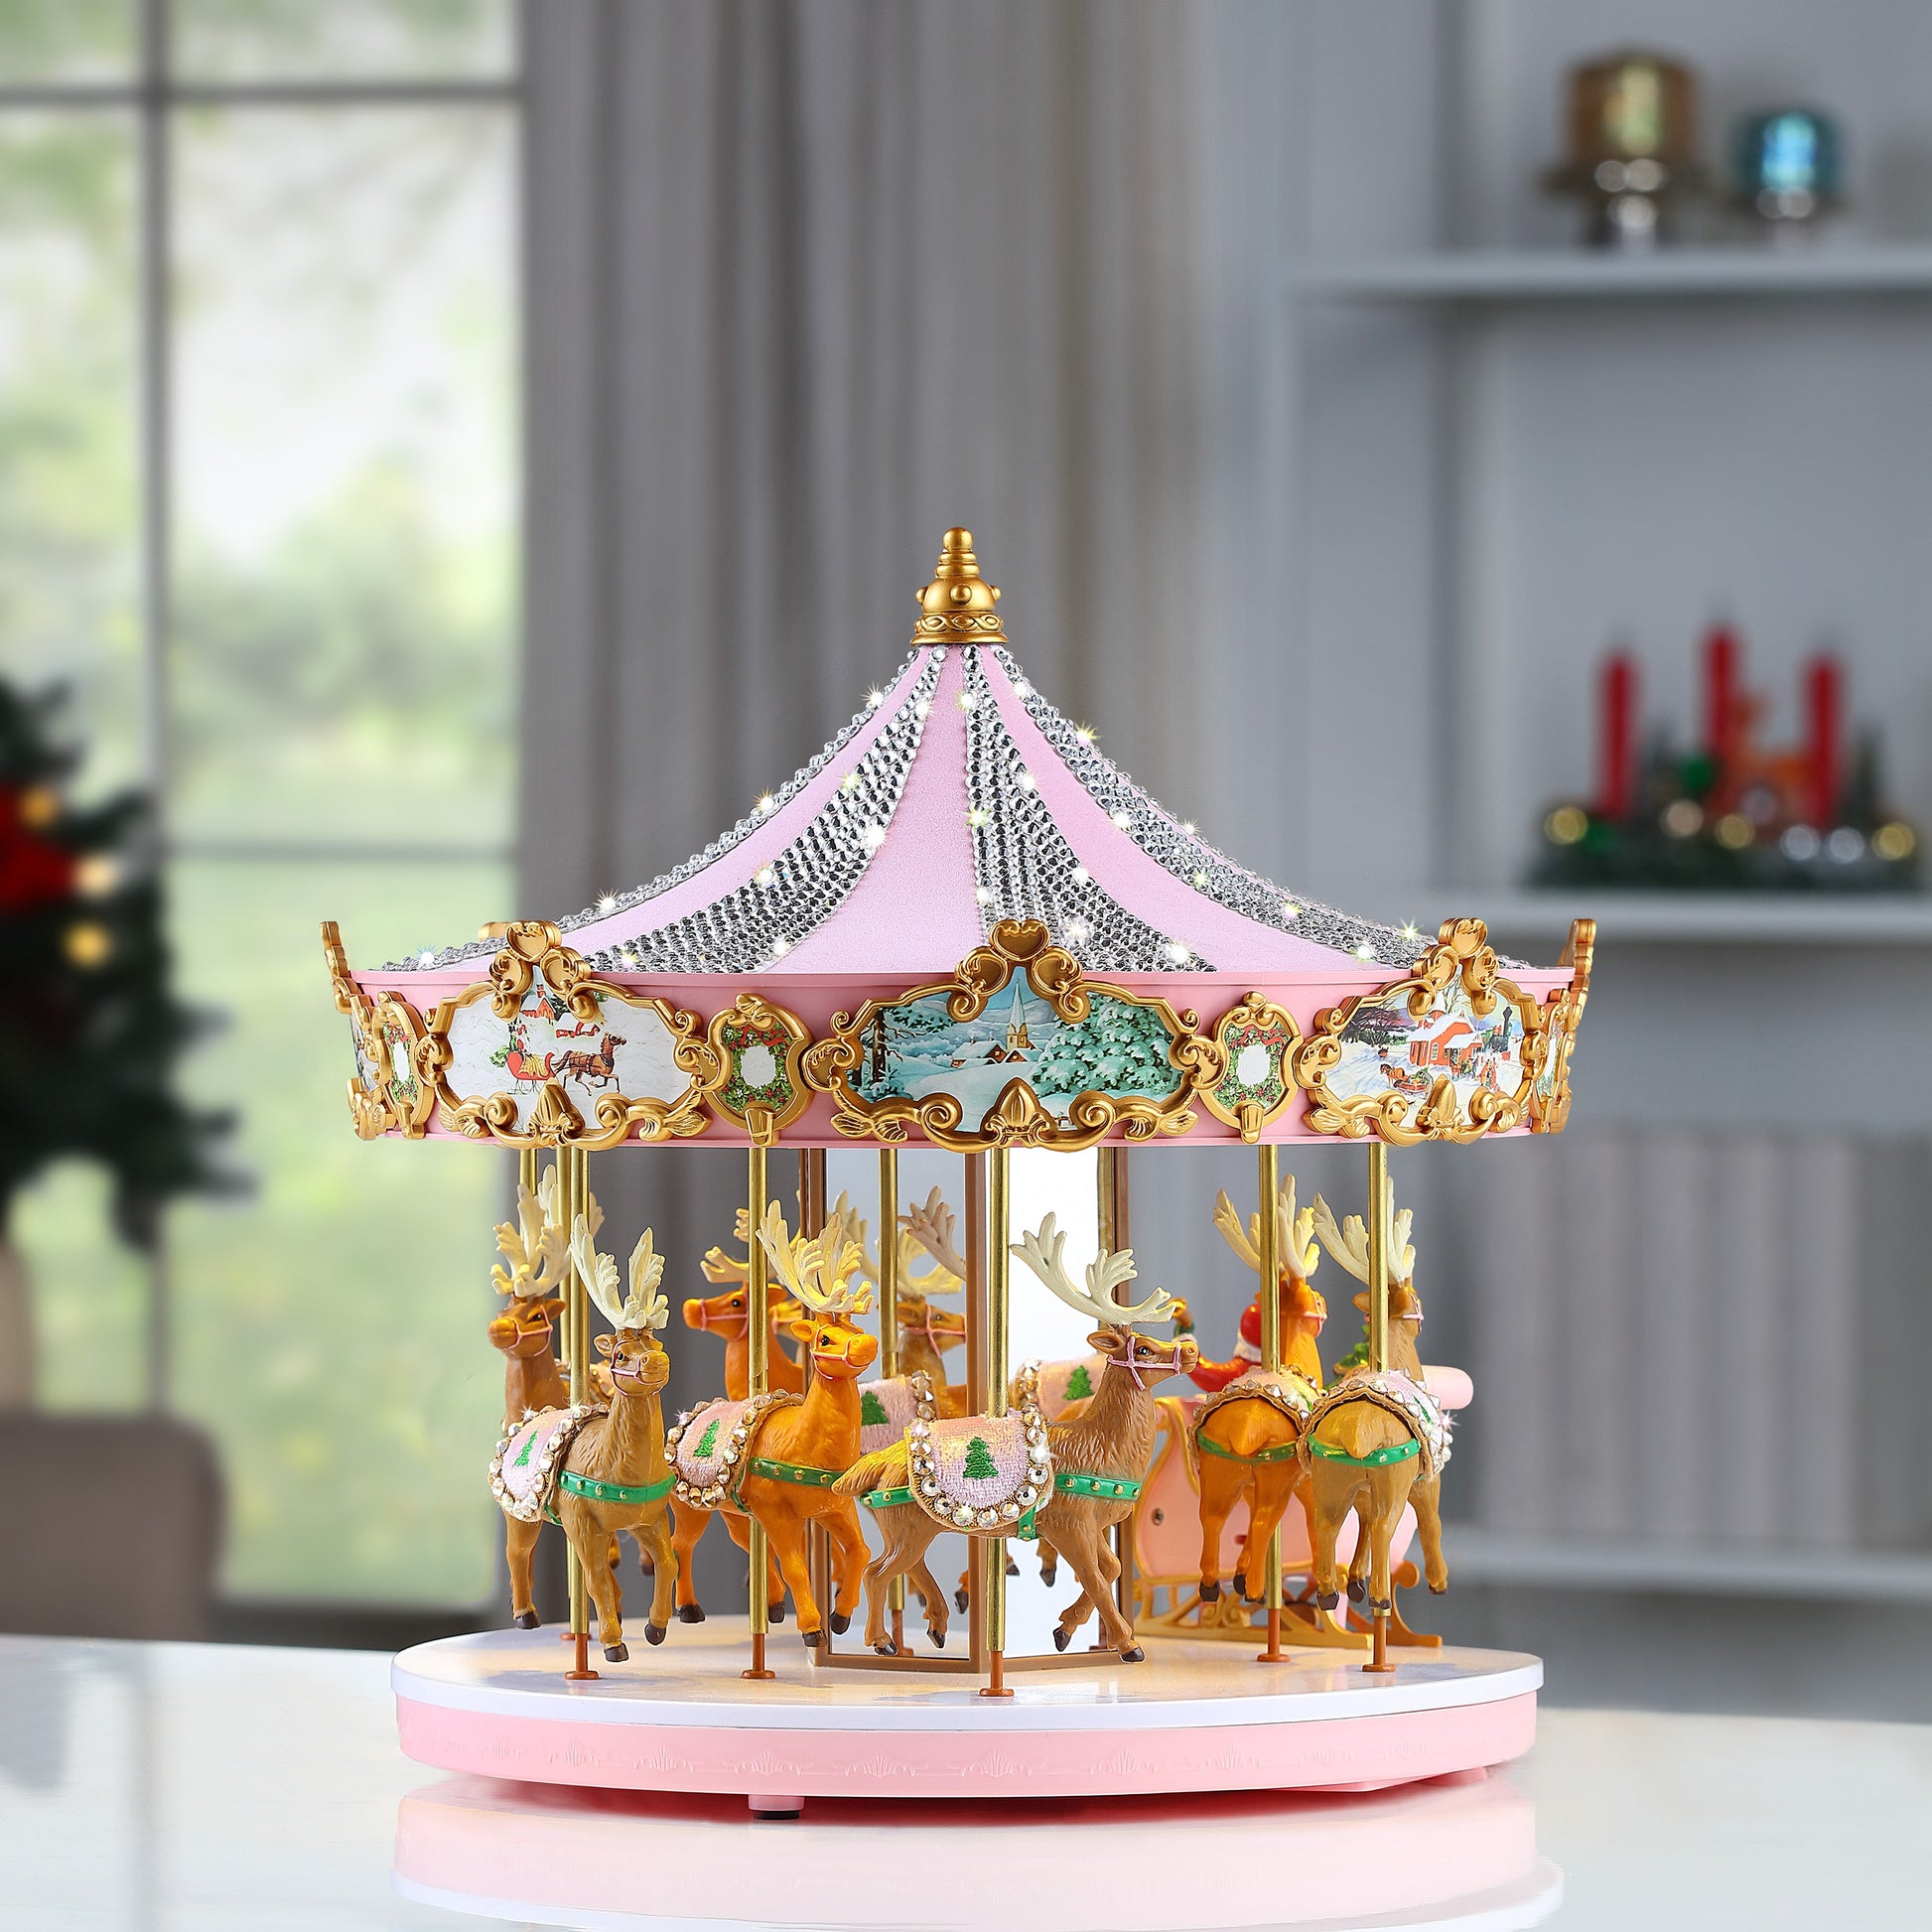 12" Animated & Musical Pink Crystal Carousel - Mr. Christmas